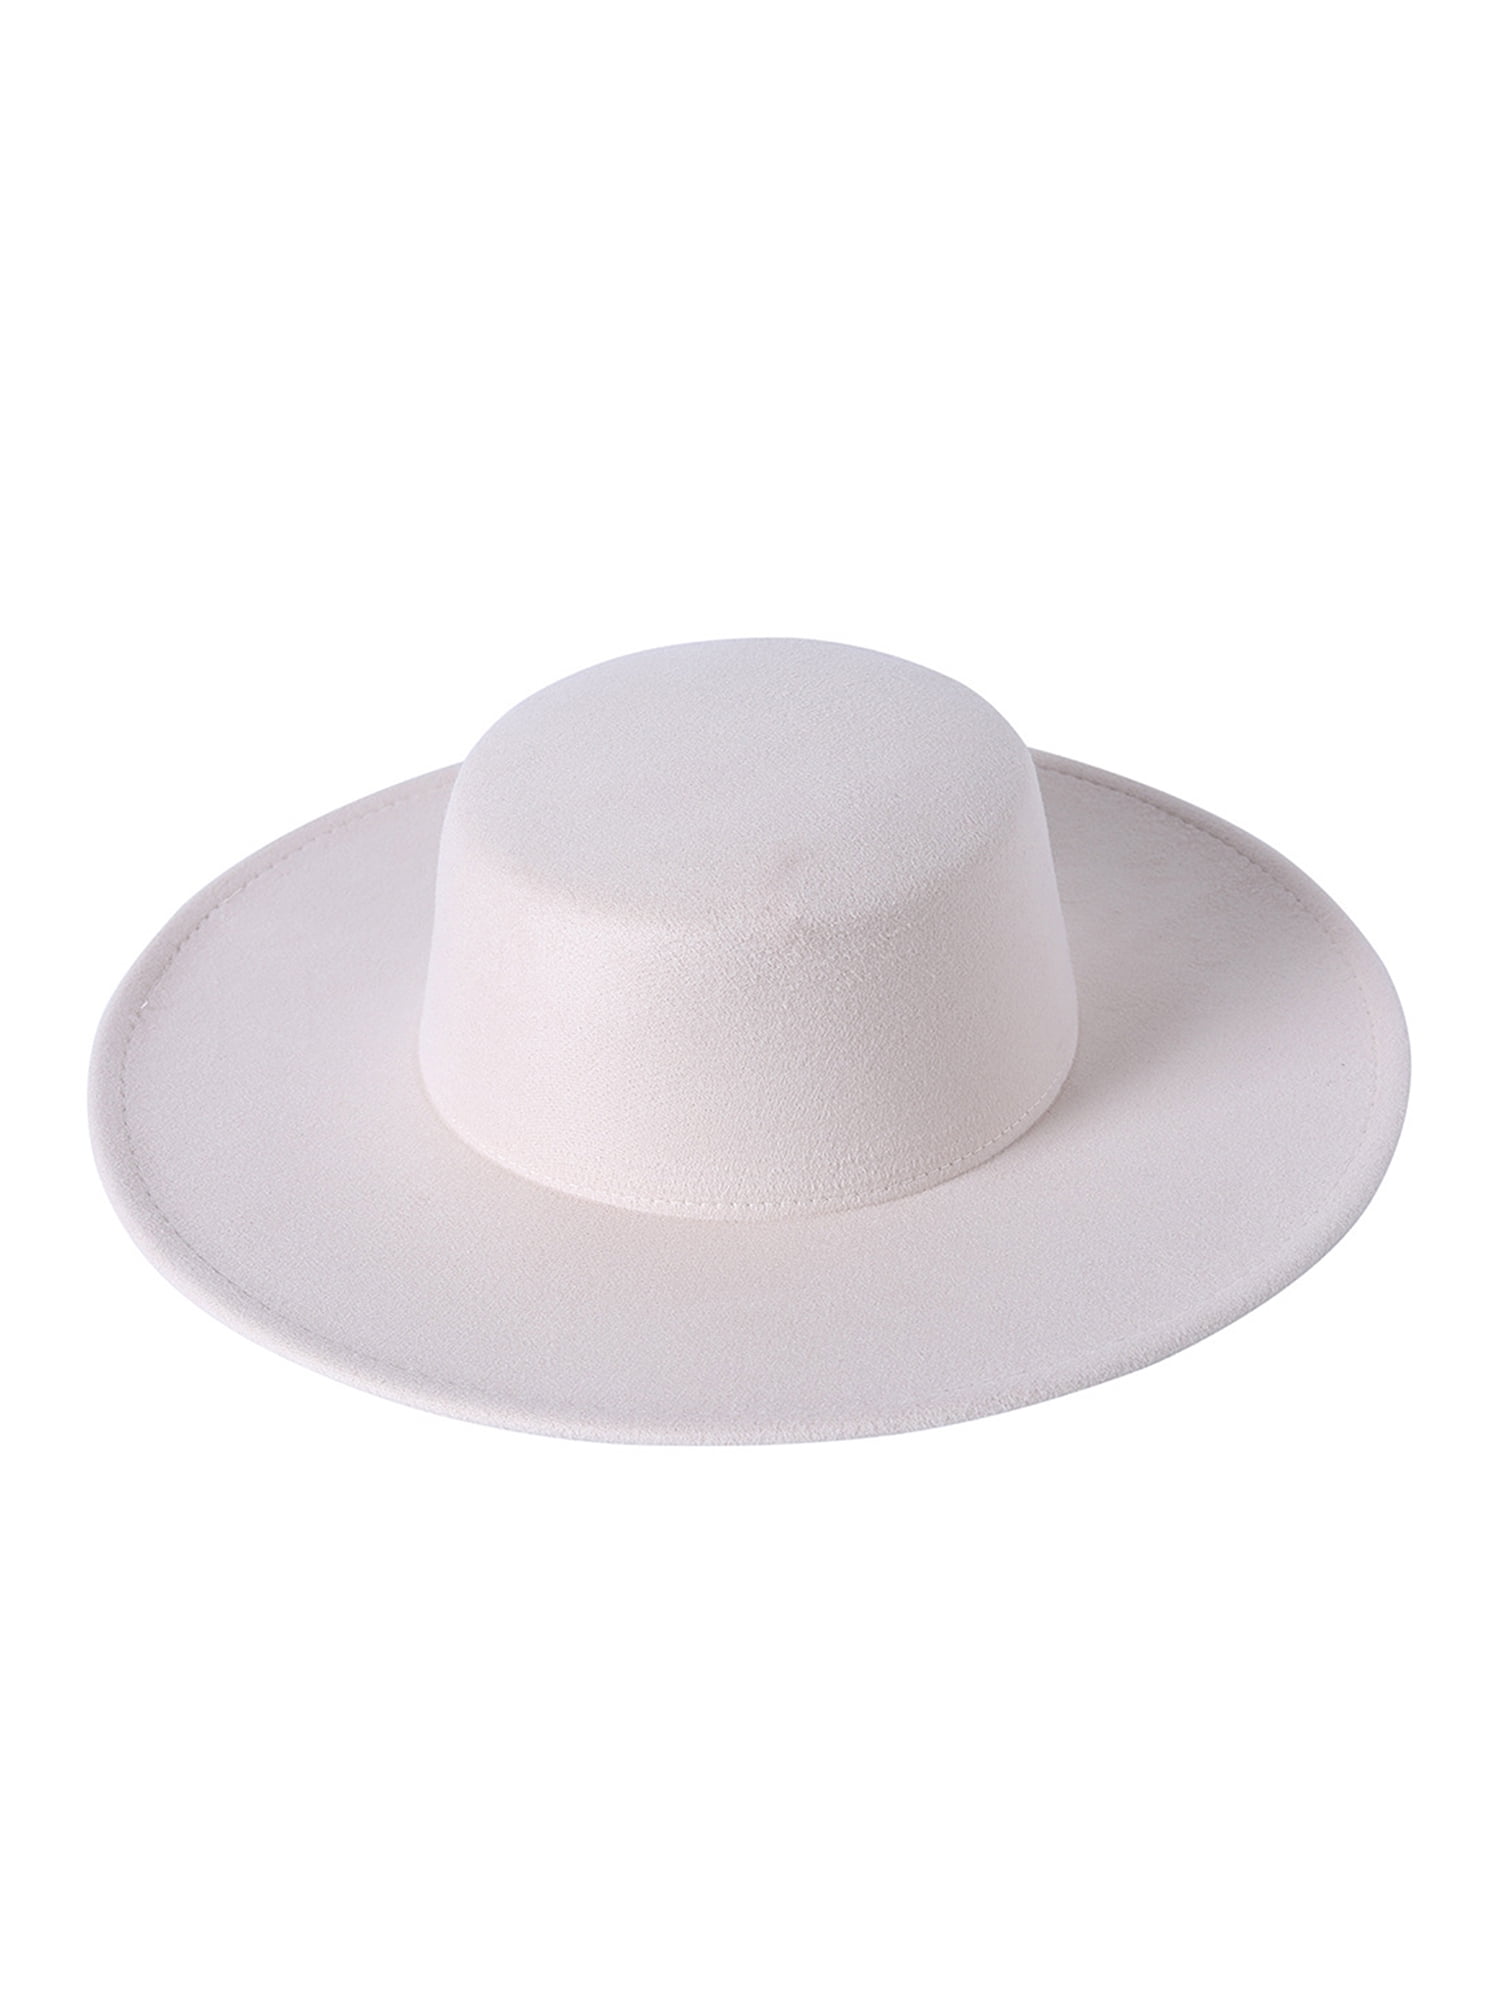 Men's Off-White Designer Hats